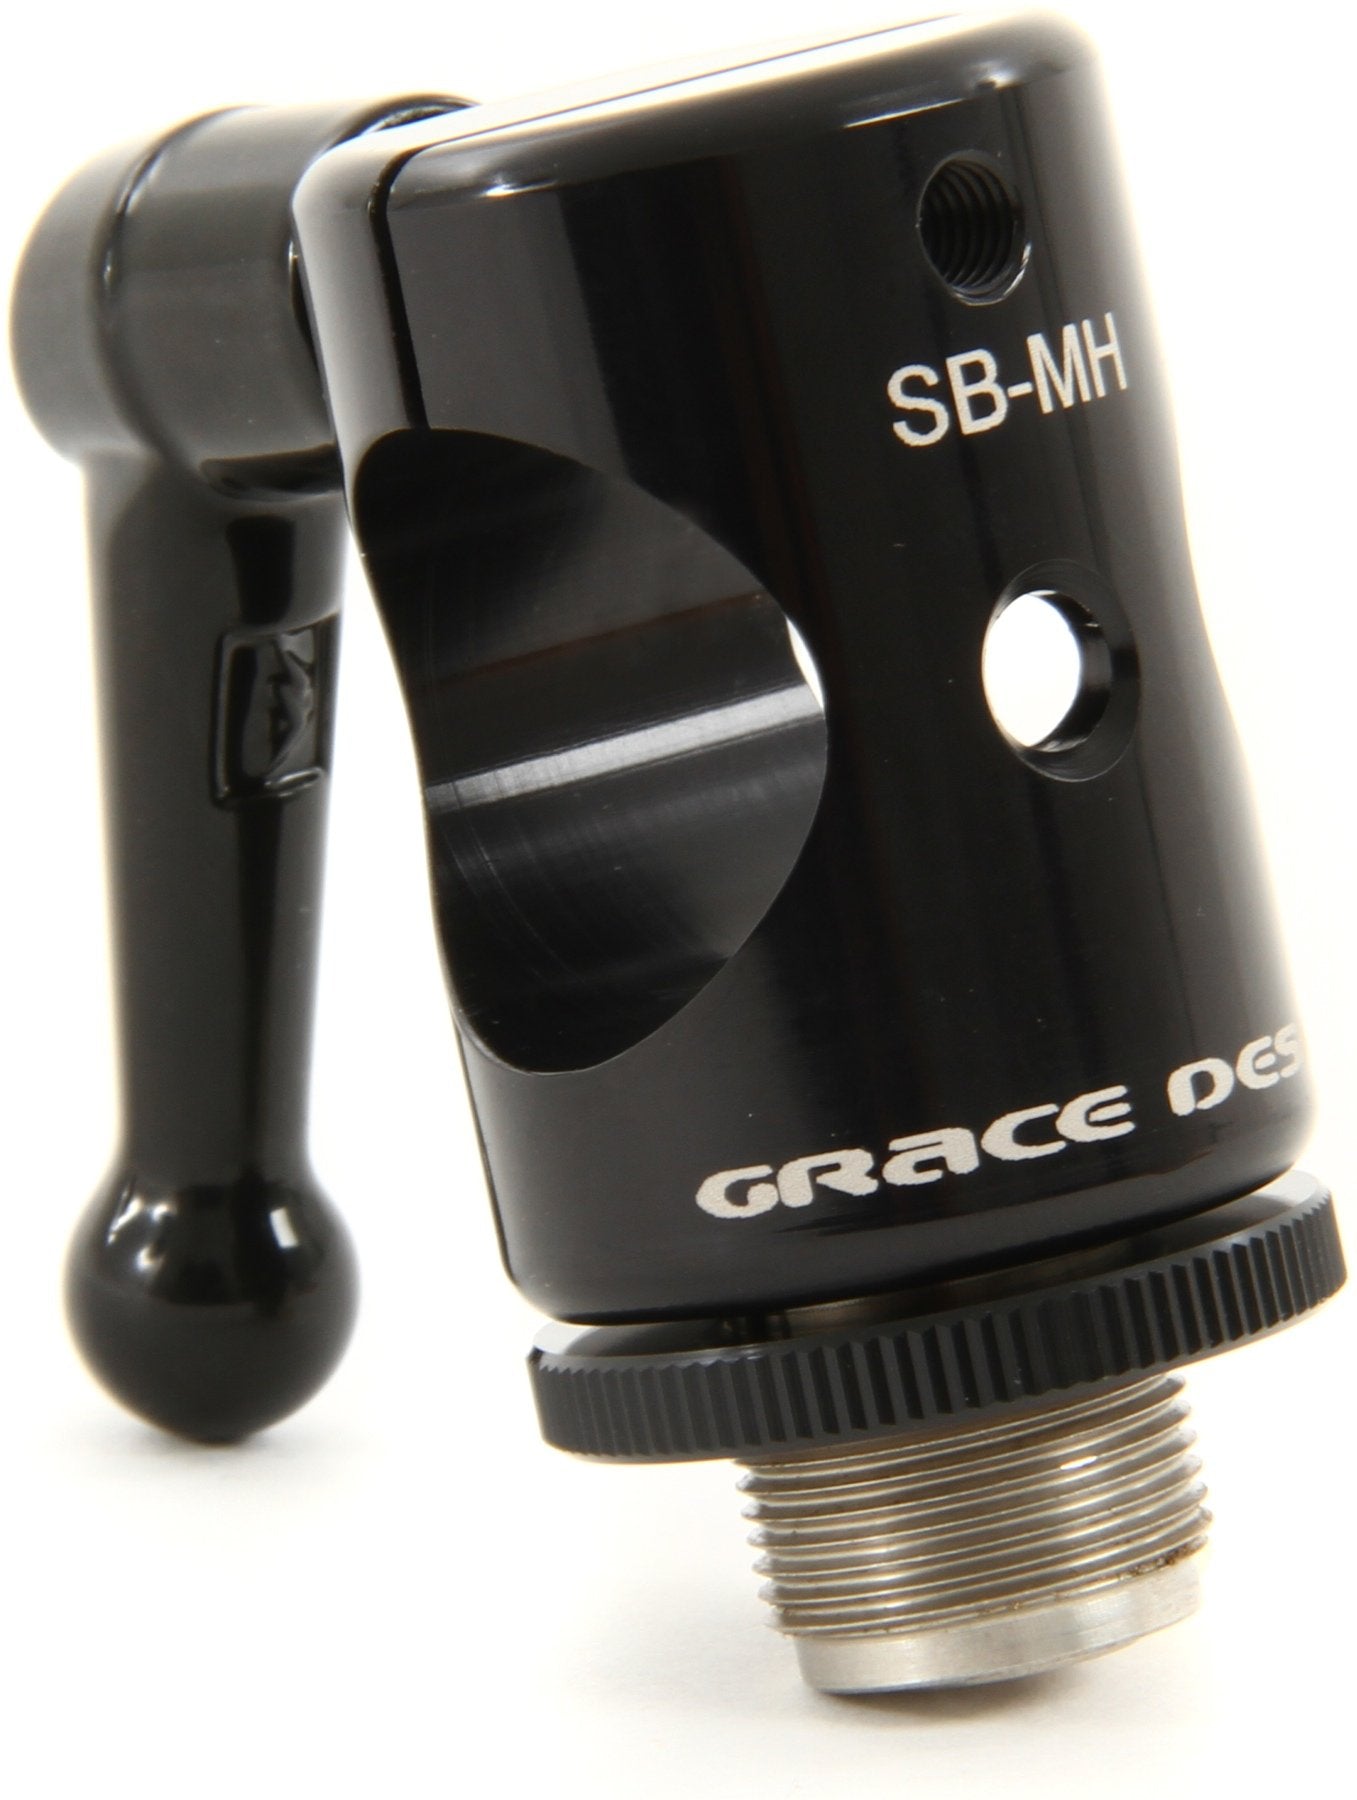 Grace Design SB-MH - Standard Mic Holder